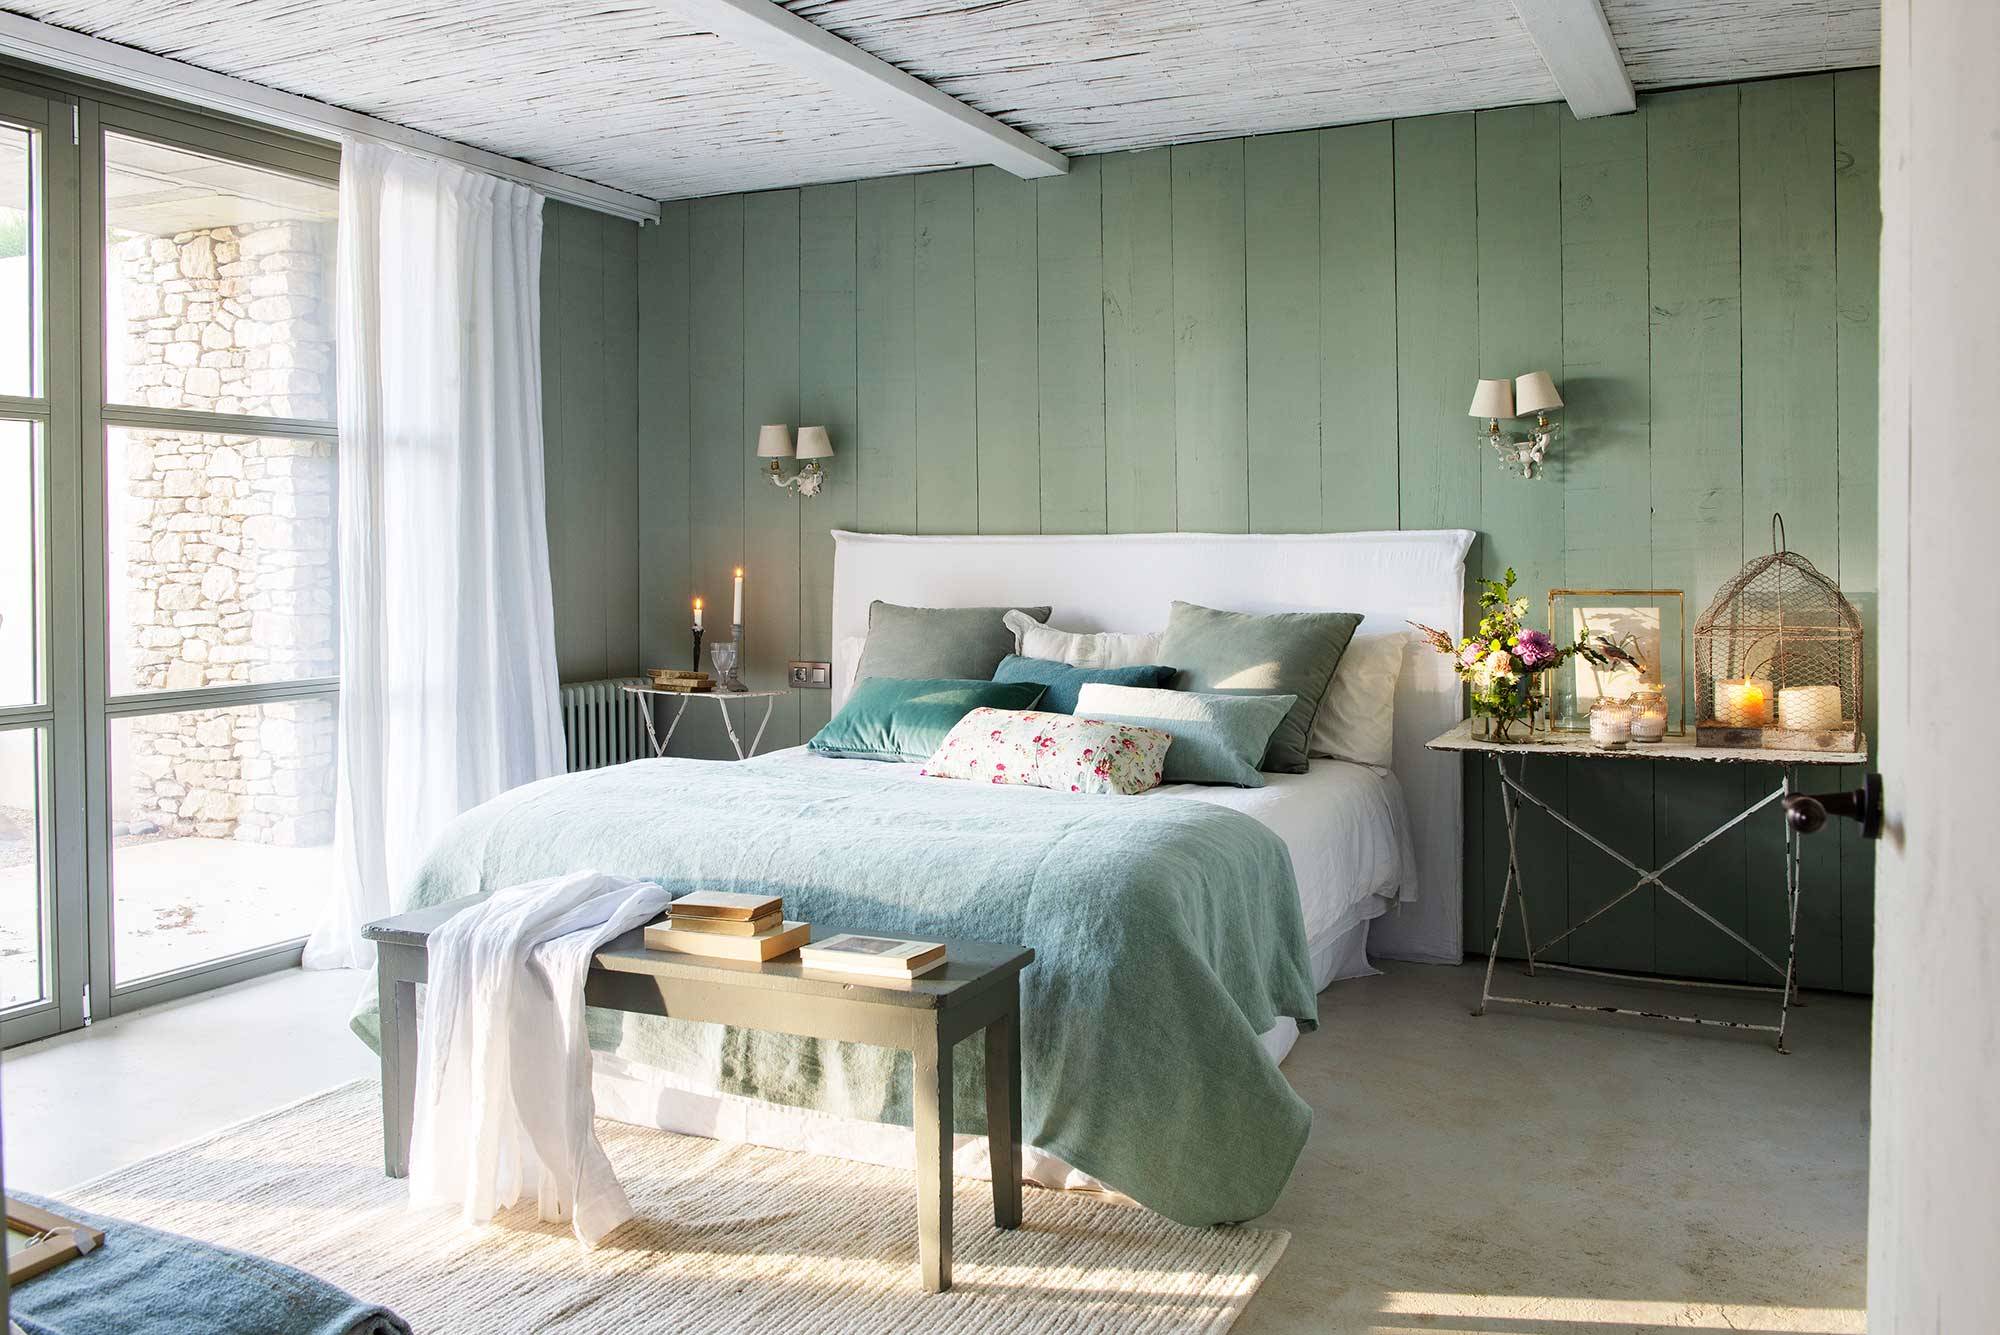 Dormitorio campestre con paredes en verde y cabecero blanco_00515304 O